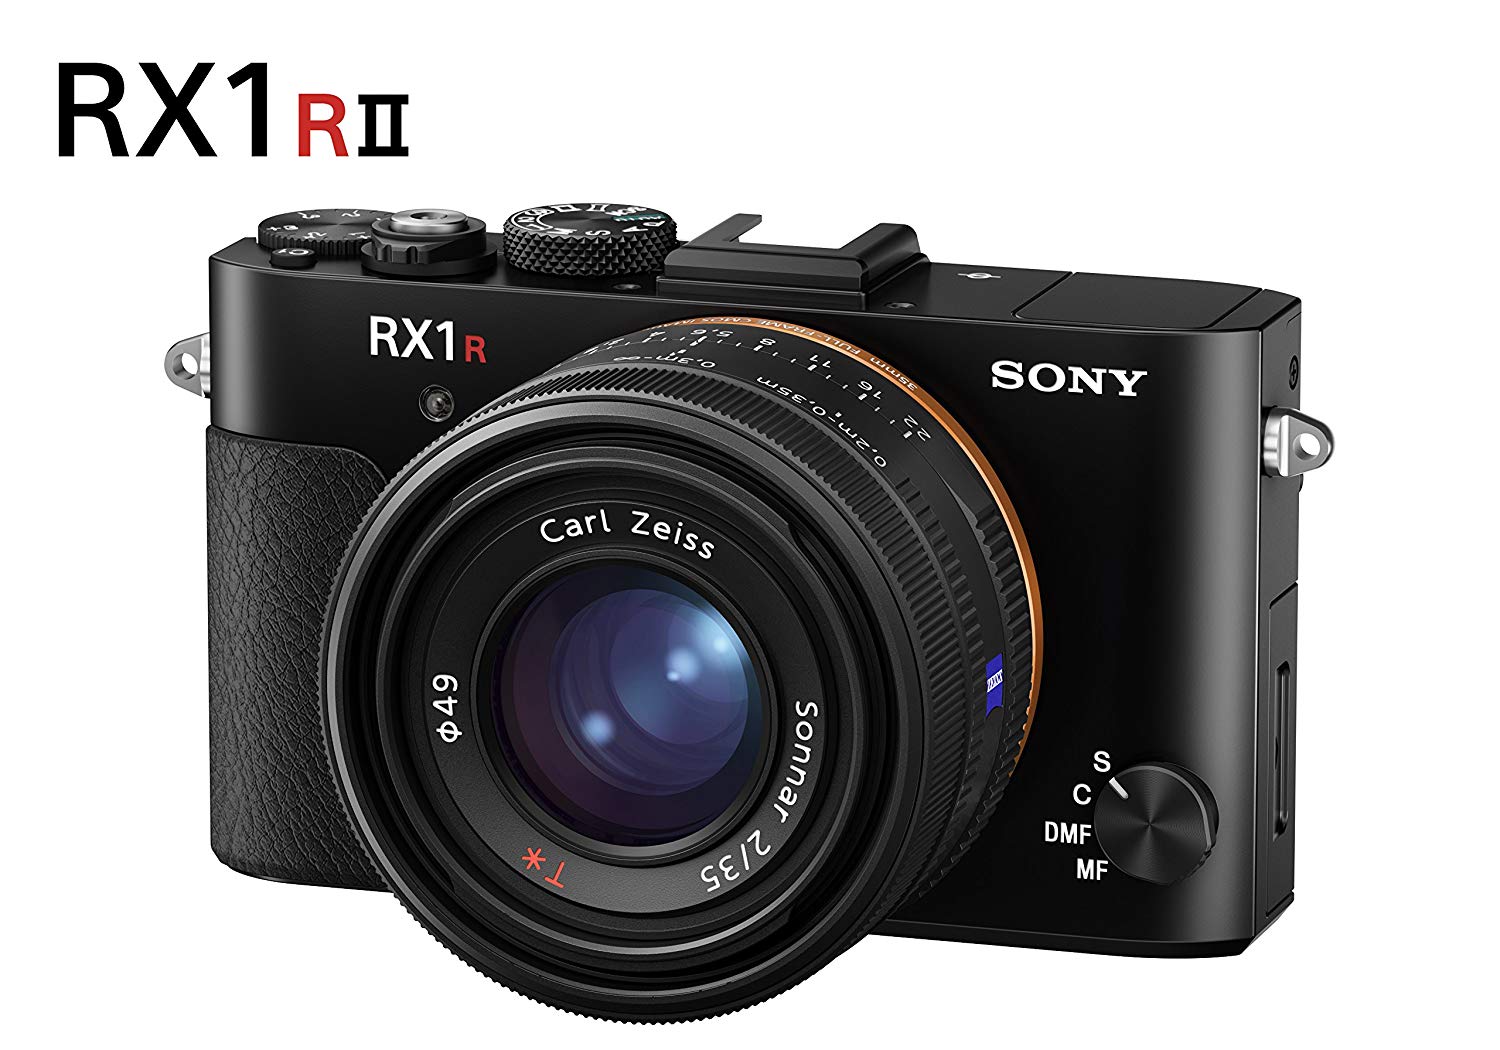 Sony Cyfrowy aparat fotograficzny Cyber-shot DSC-RX1 RII